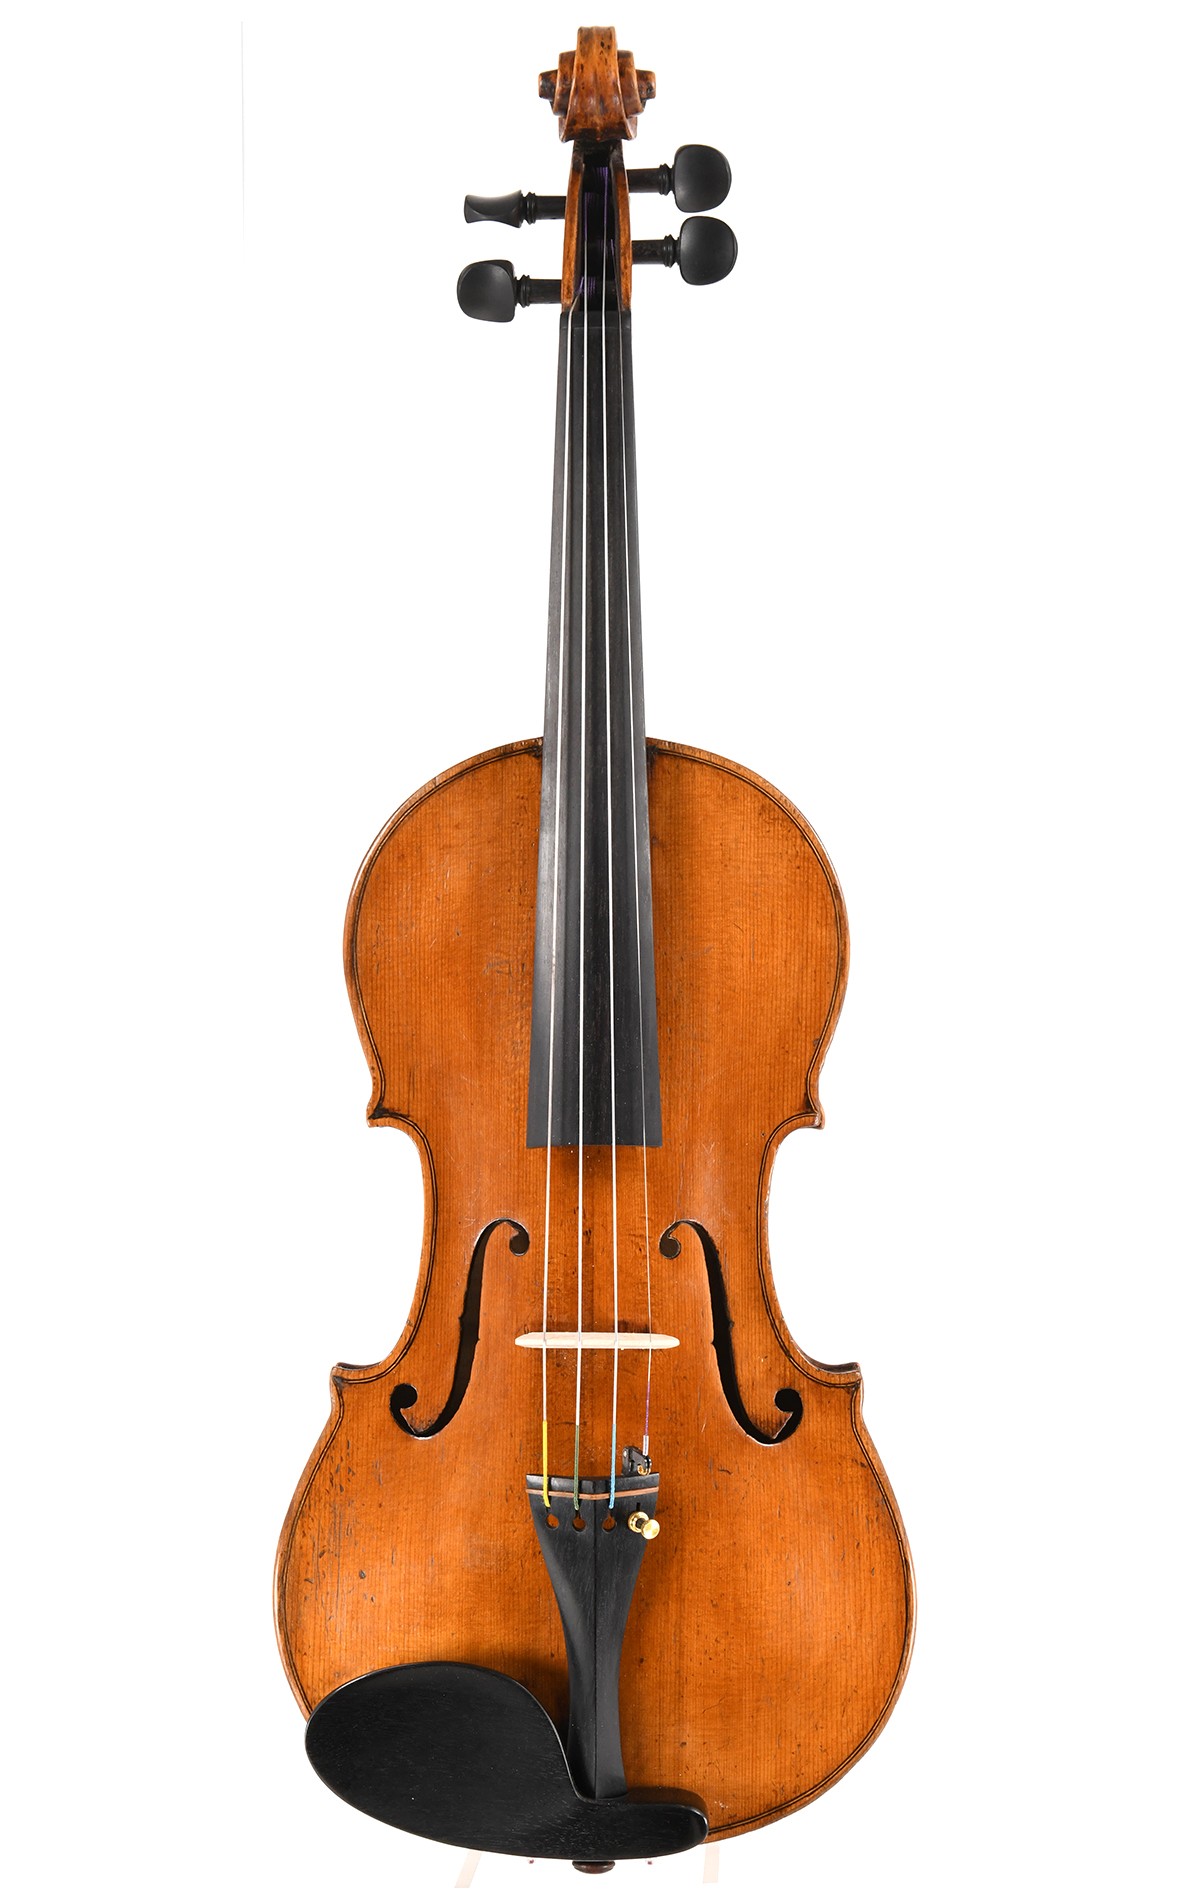 Antique violon de maître vers 1800 - École suisse